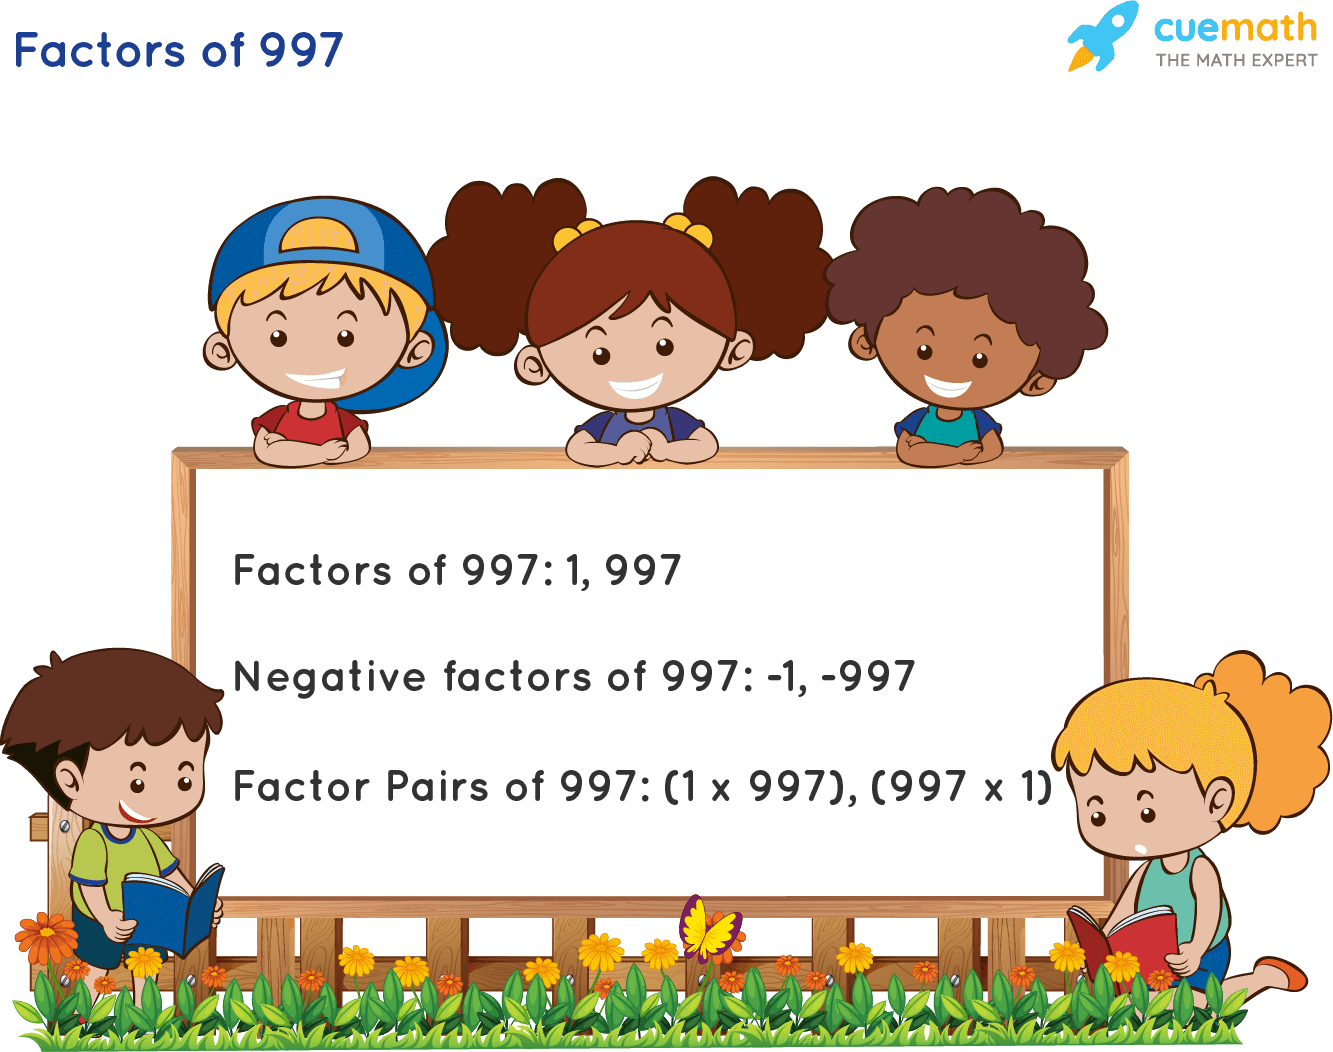 Factors of 997